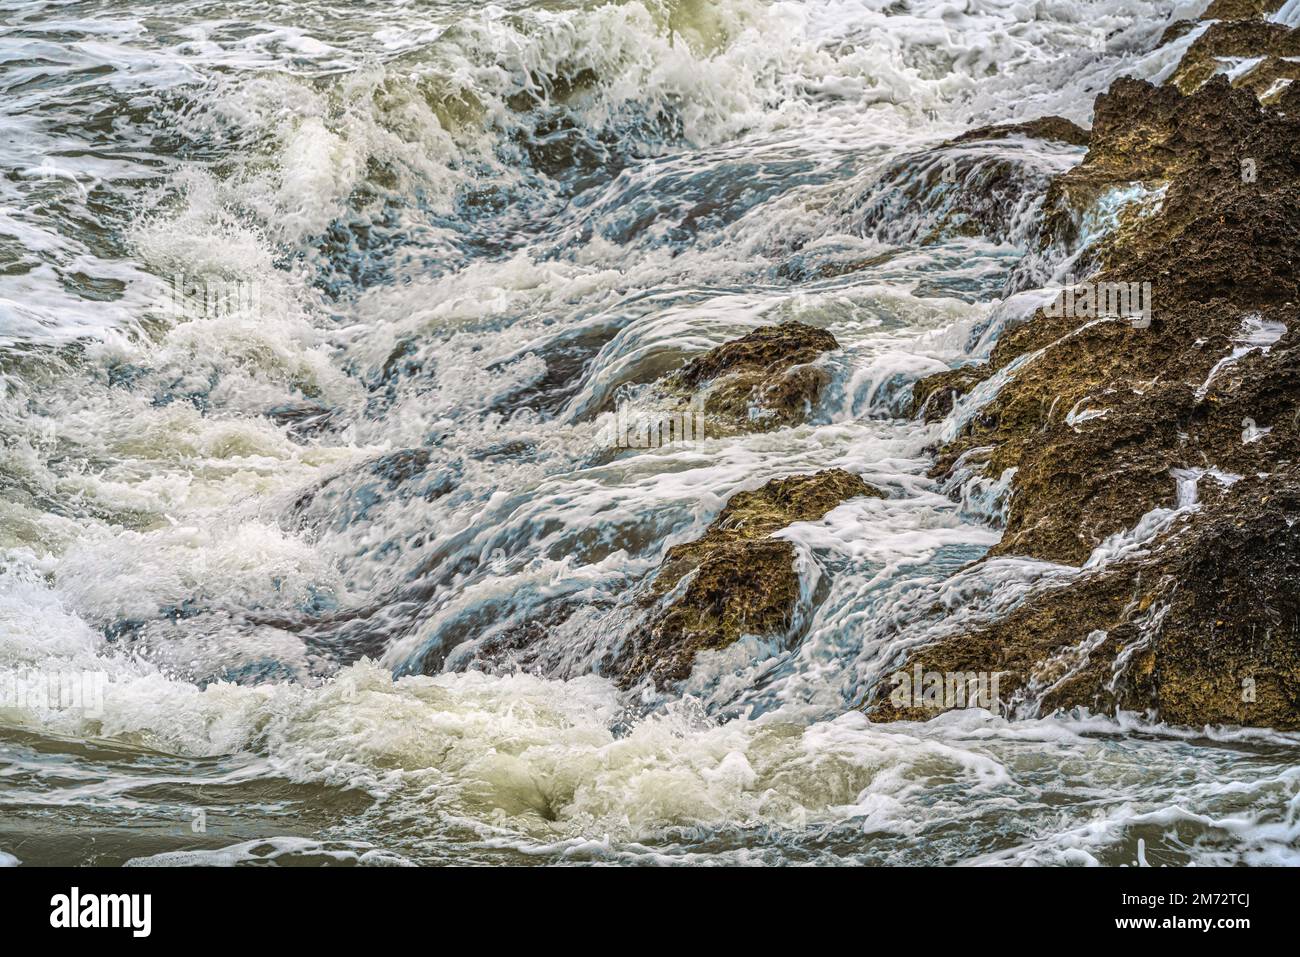 Le onde del mare mosso dopo giorni di pioggia e vento si scontrano con le coste rocciose del Gargano in Puglia. Puglia, Italia, Europa Foto Stock